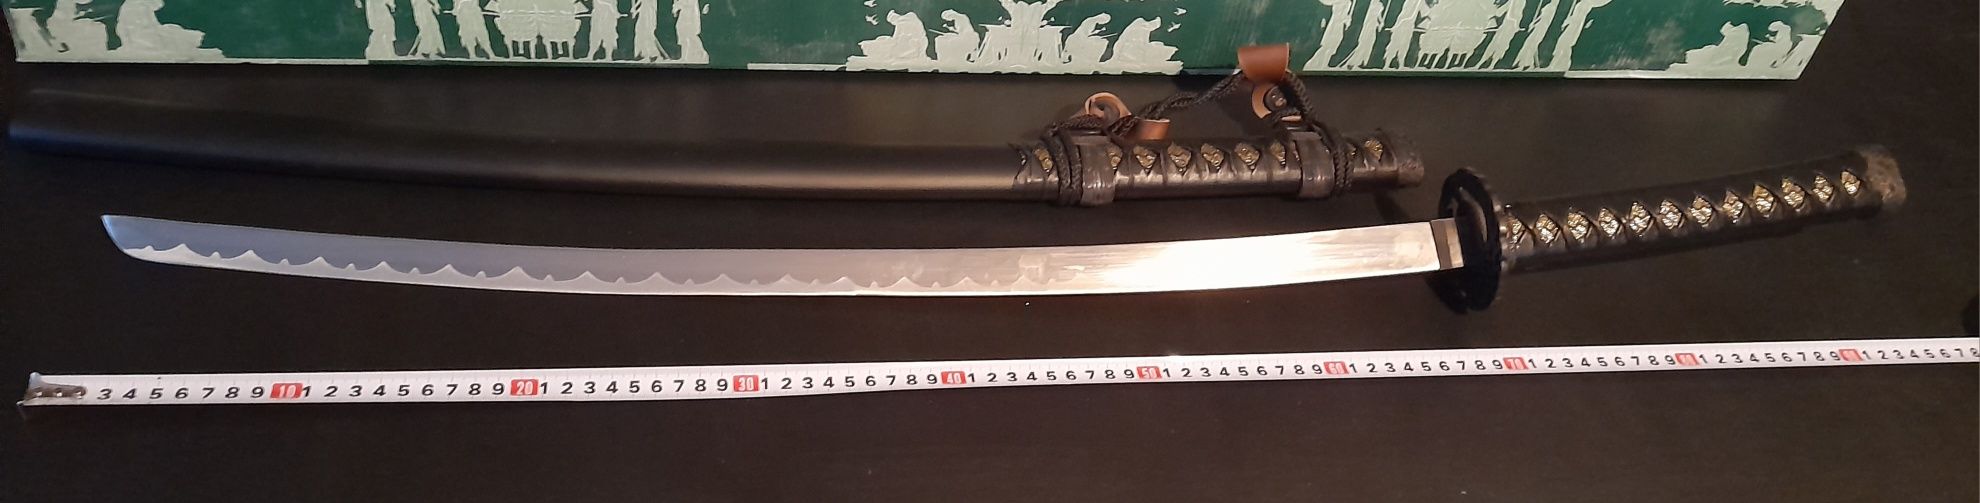 Сувенирный набор японских мечей